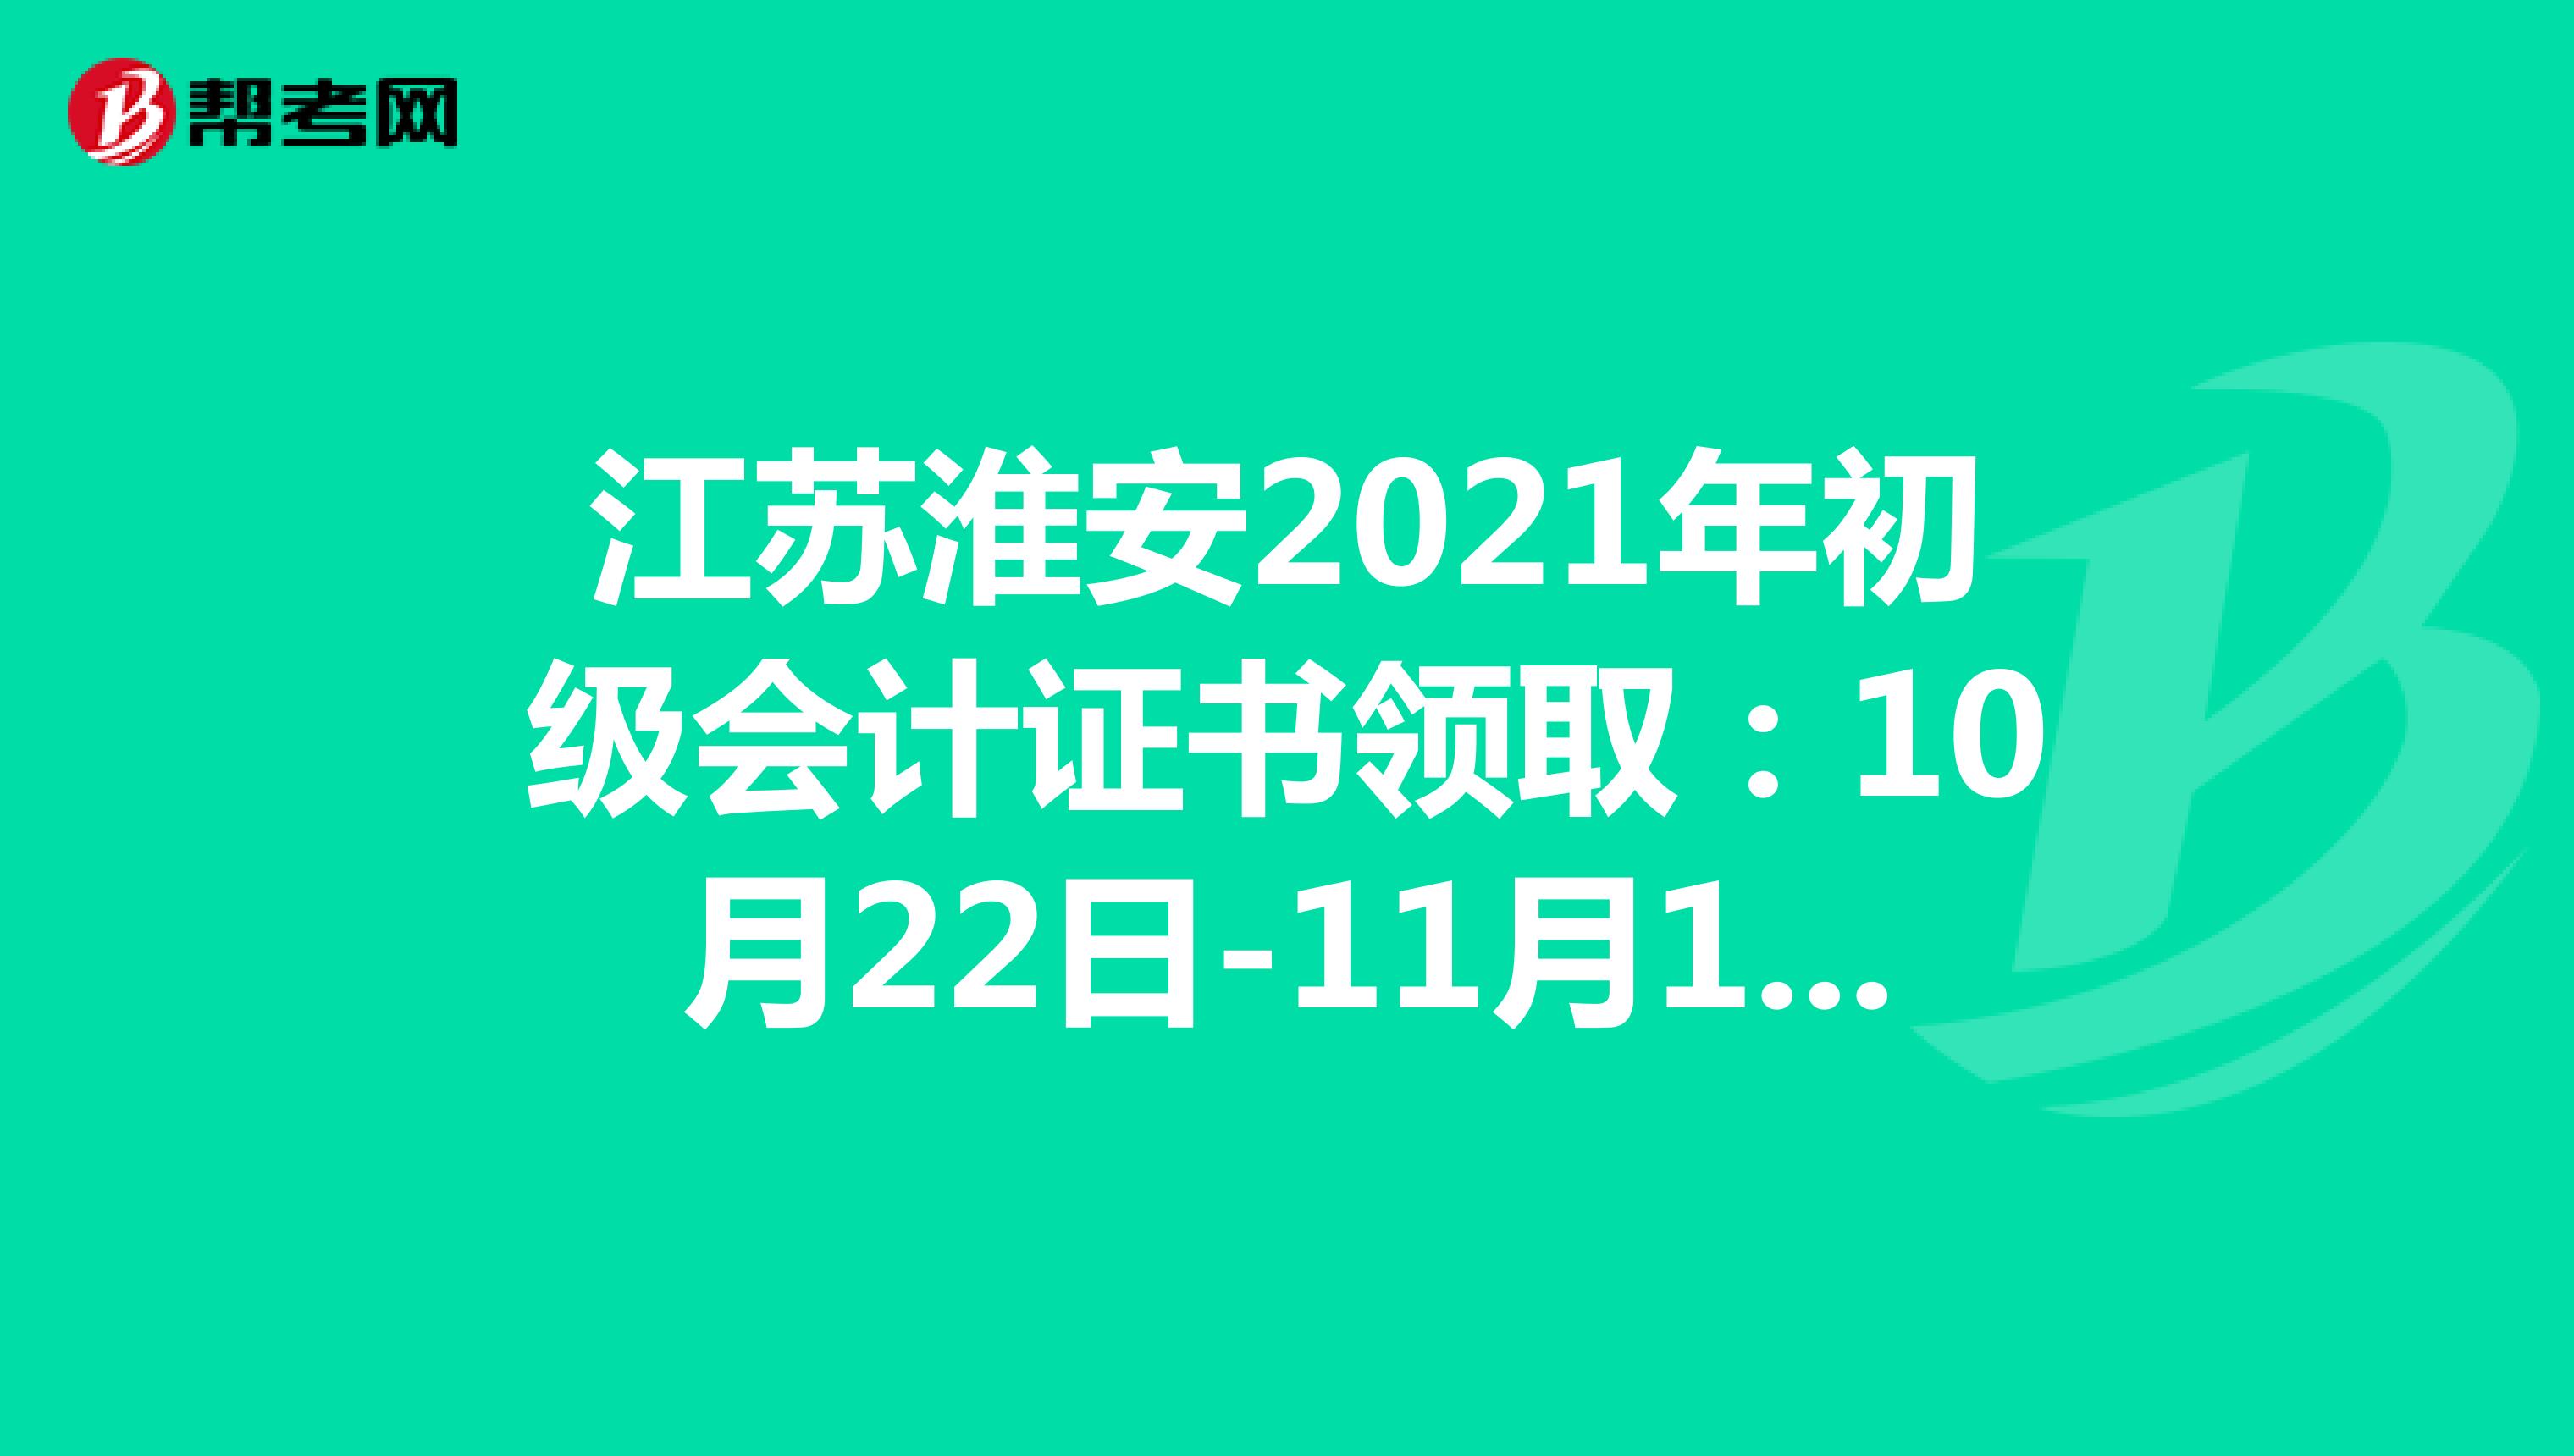 江苏淮安2021年初级会计证书领取：10月22日-11月19日